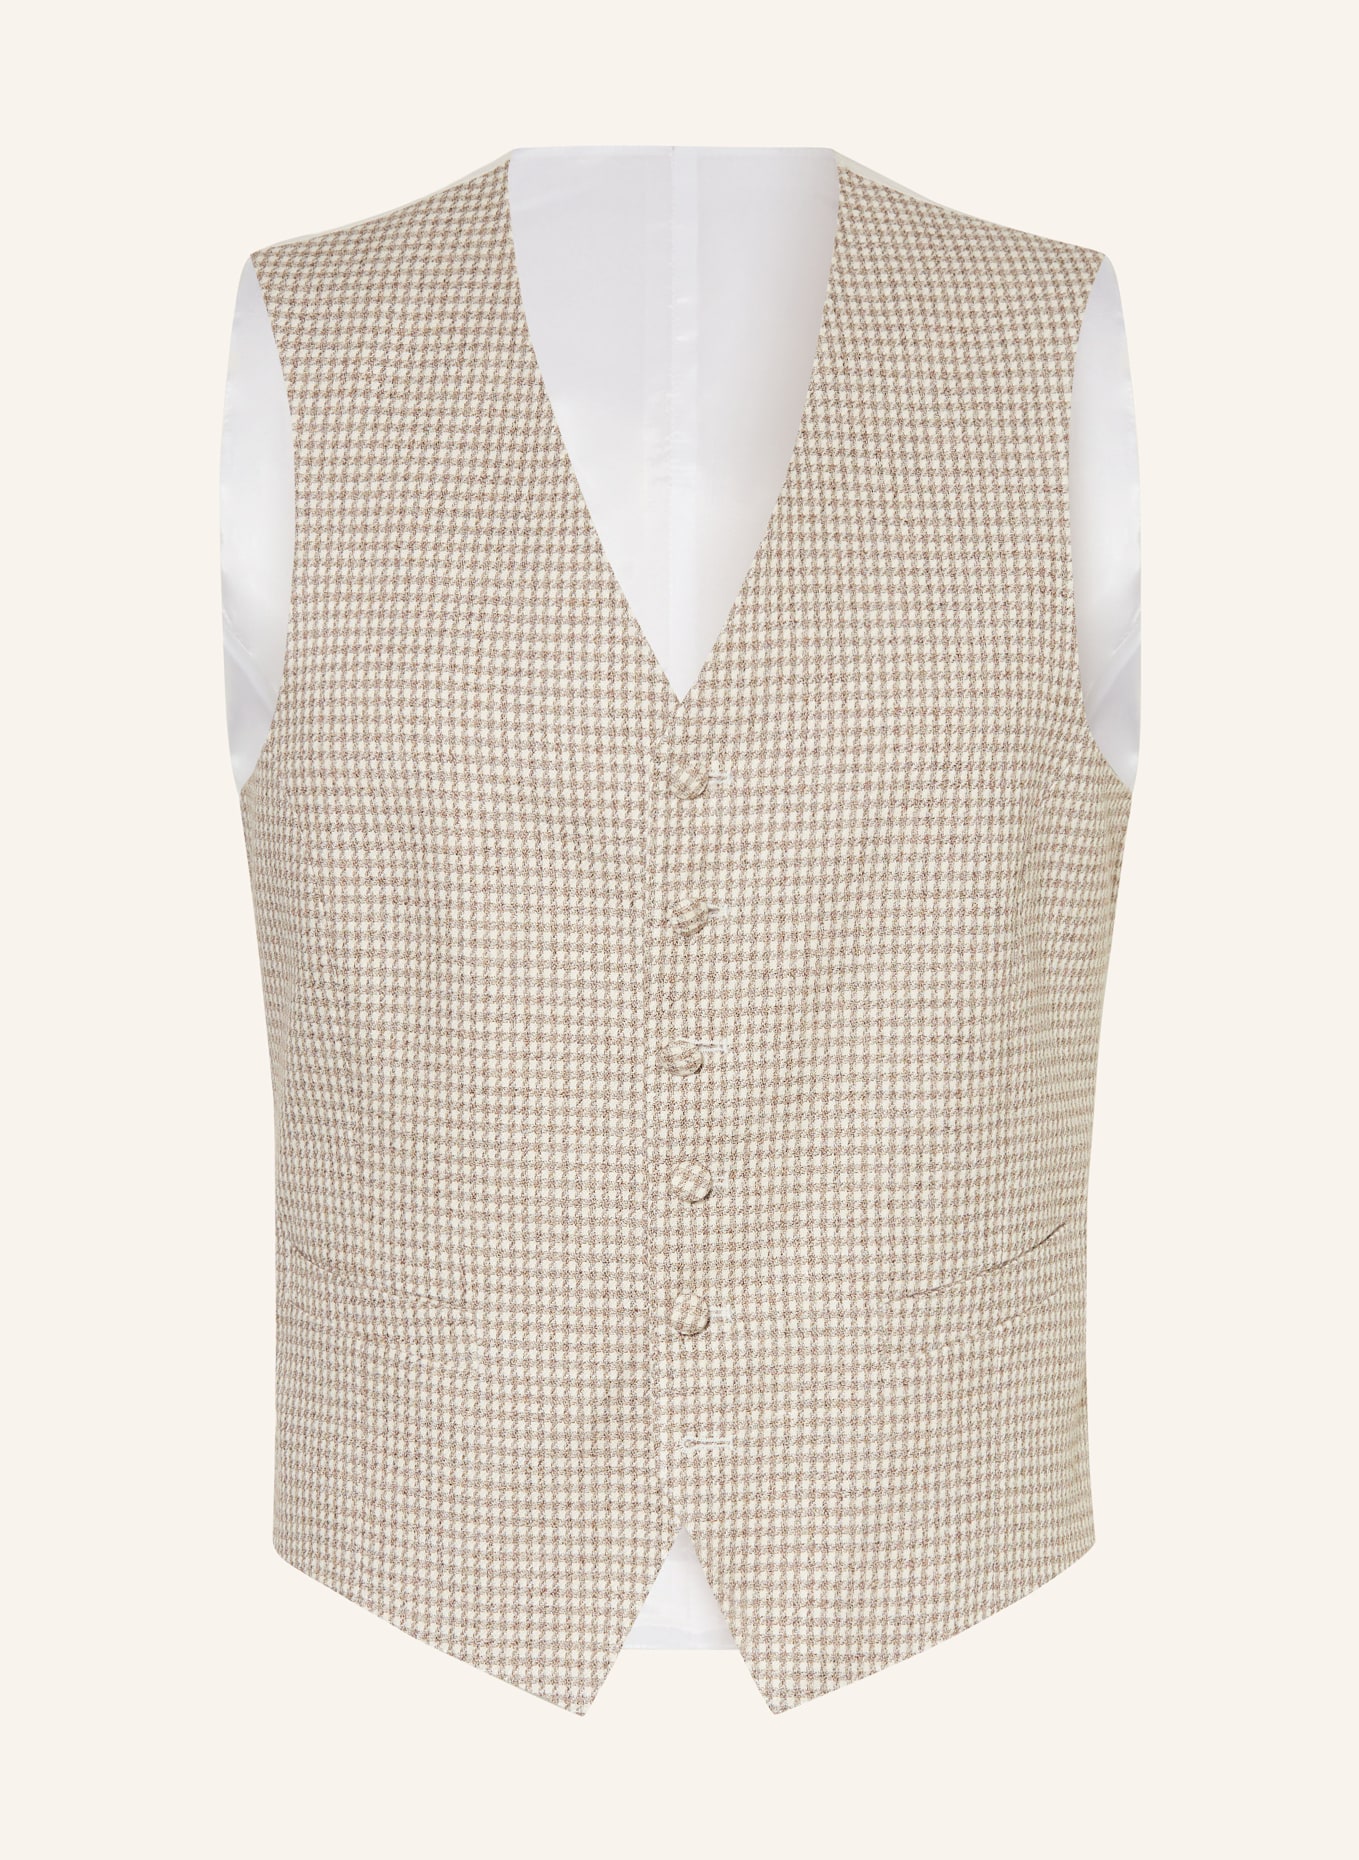 JOOP! Suit vest WEAZER extra slim fit, Color: 265 Medium Beige               265 (Image 1)